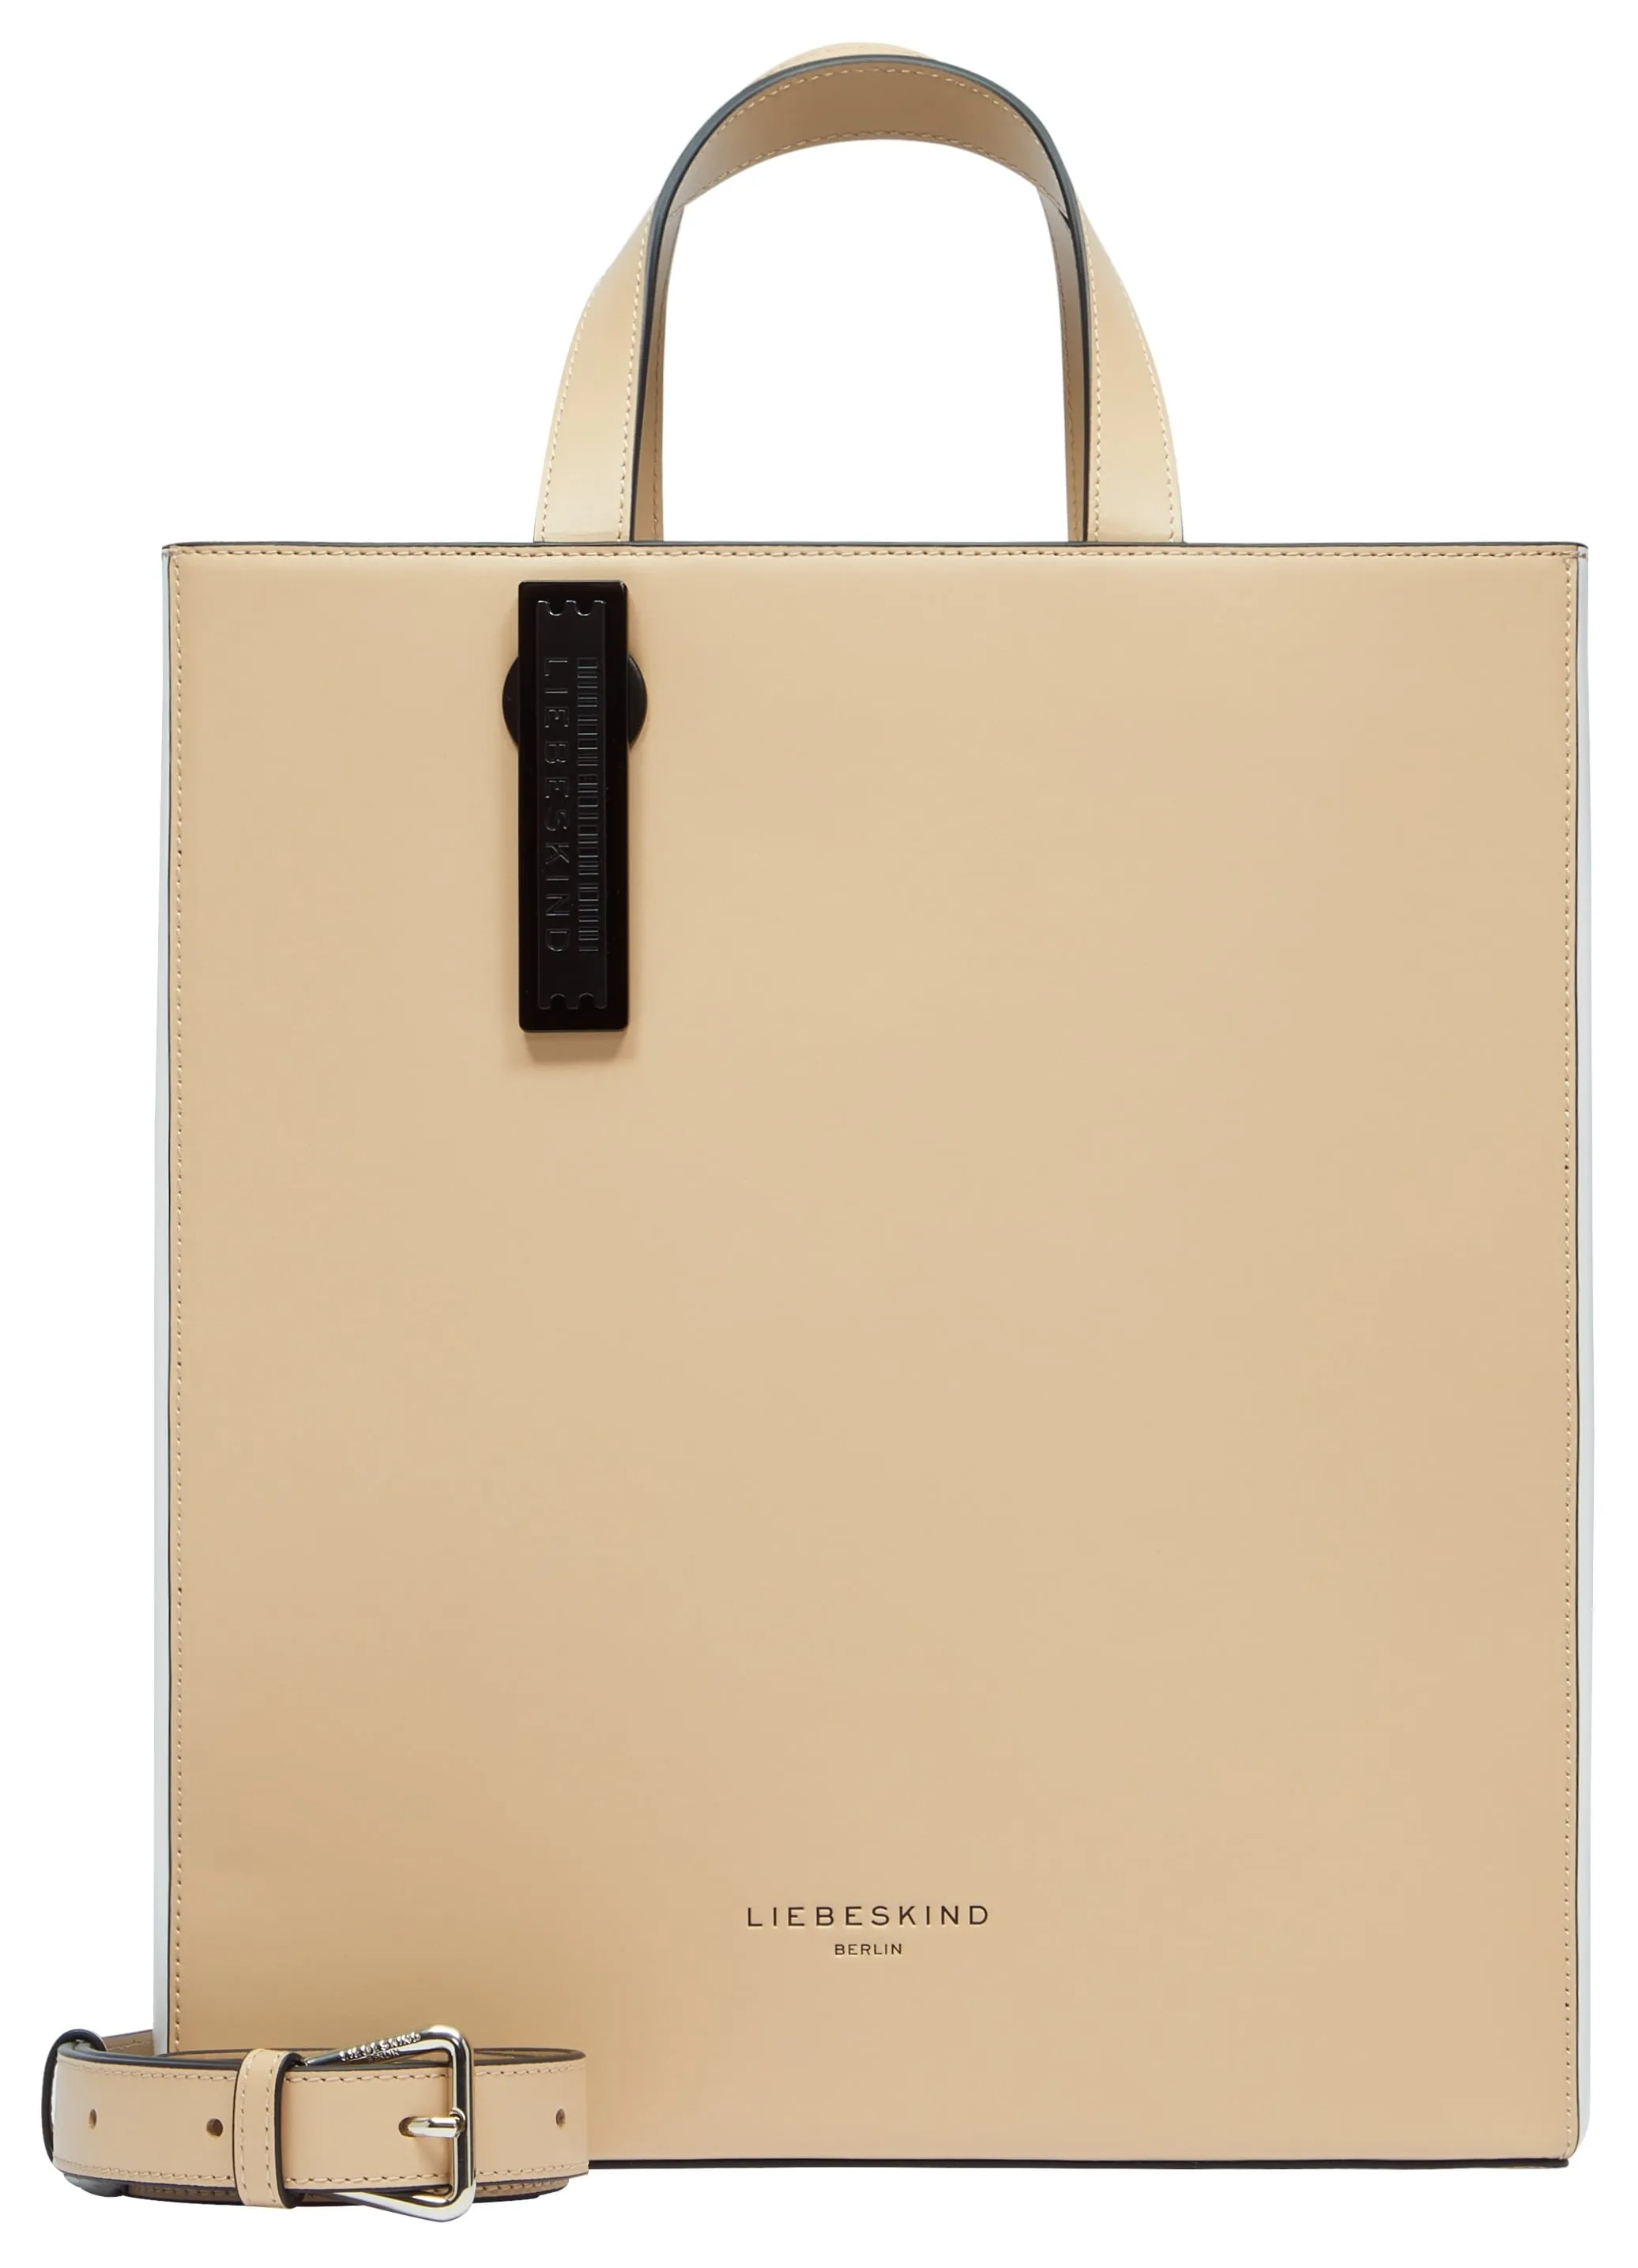 Shopper LIEBESKIND BERLIN Gr. B/H/T: 29 cm x 34 cm x 15 cm, beige (sandy) Damen Taschen Handtaschen Handtasche Bag Ladies, Zertifiziert nach LWG